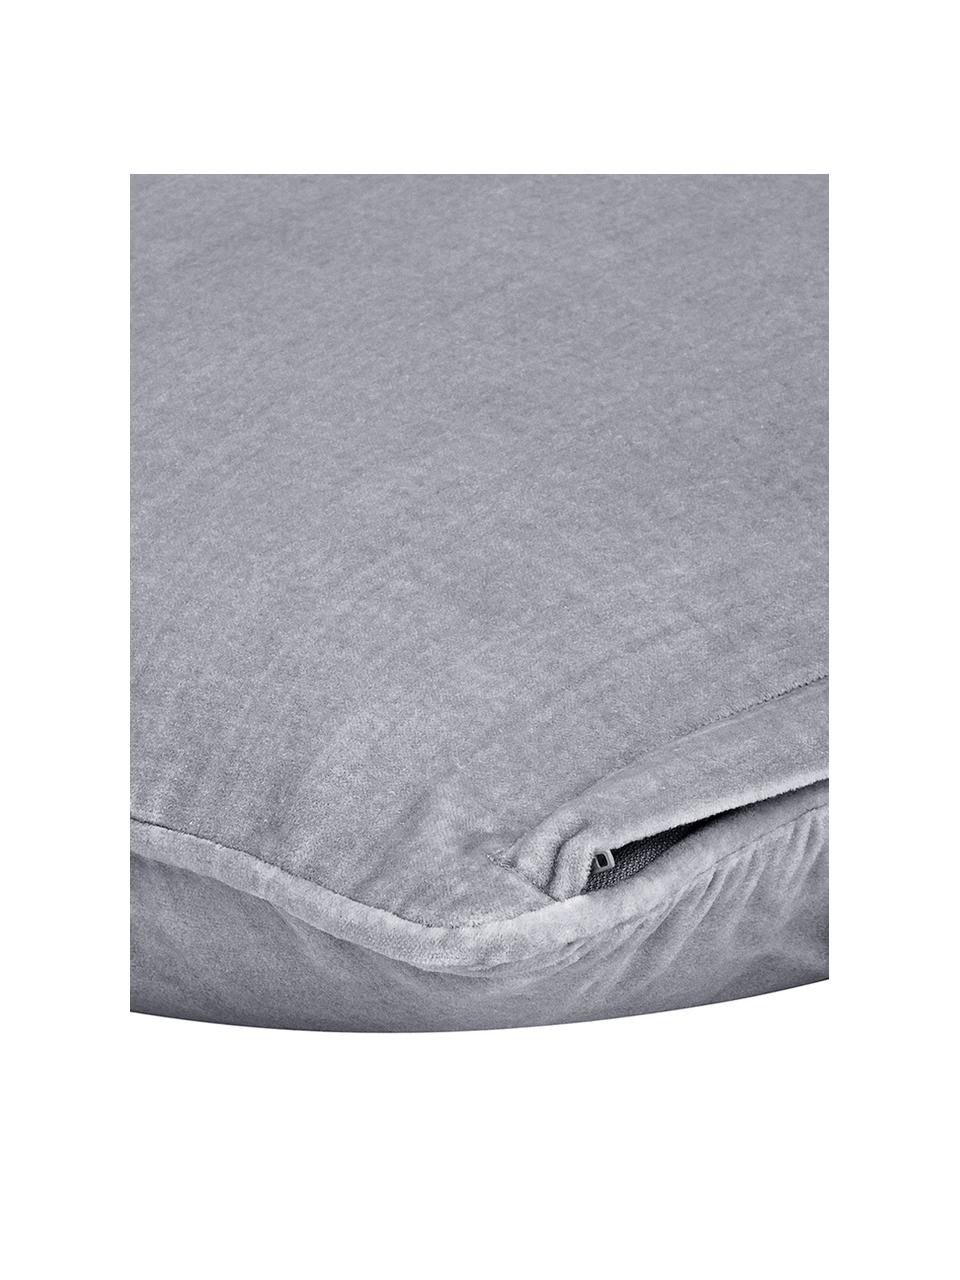 Einfarbige Samt-Kissenhülle Dana in Grau, 100% Baumwollsamt, Grau, B 40 x L 40 cm